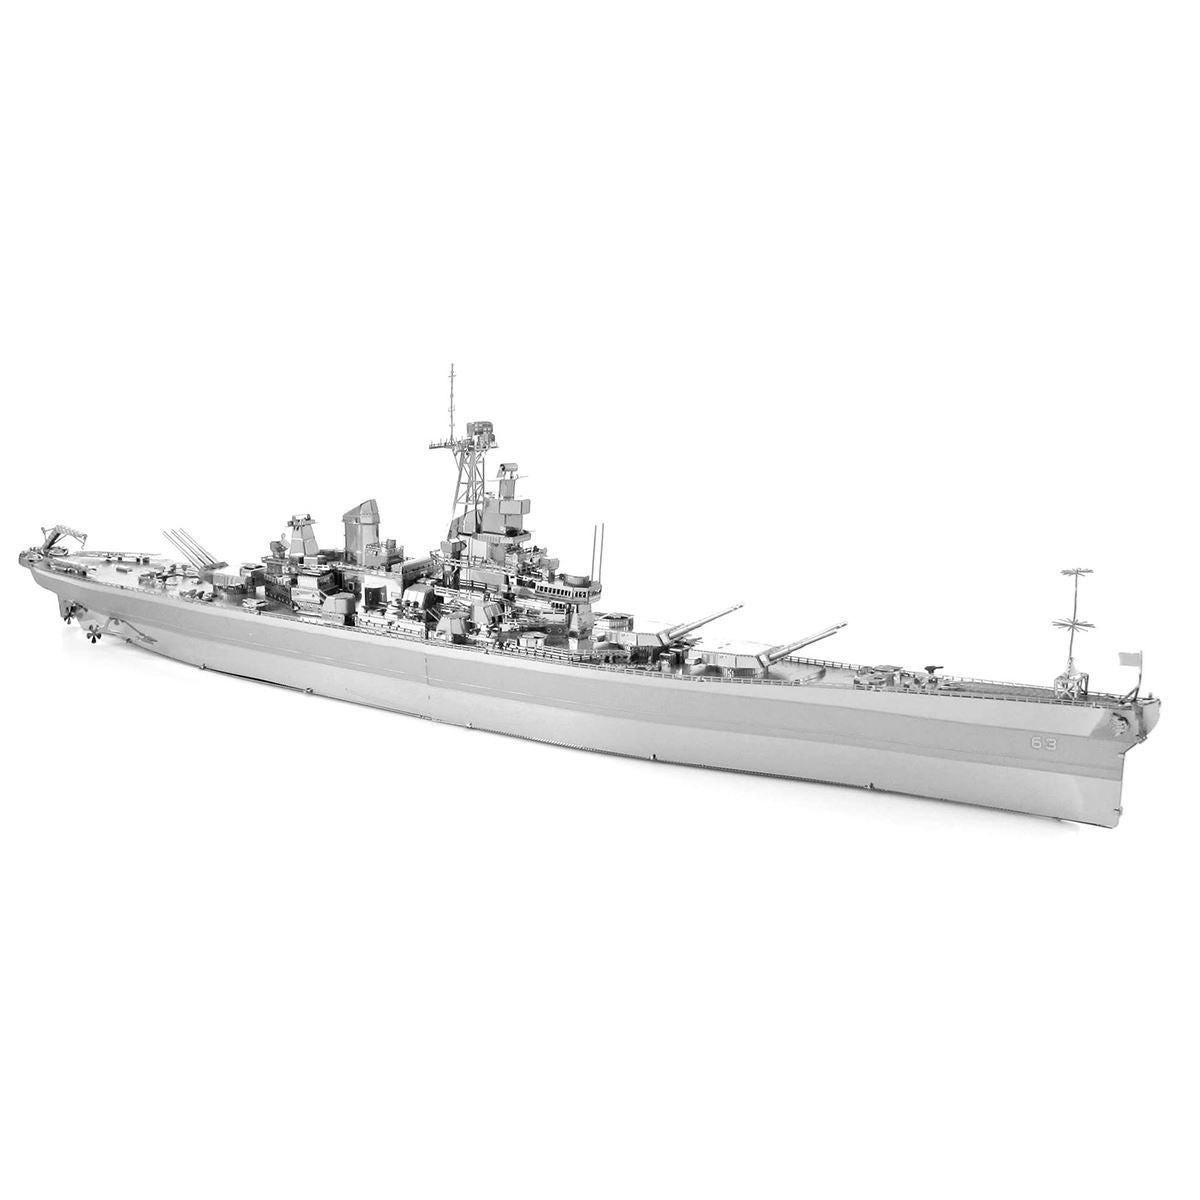 ICONX USS MISSOURI - CAT SERVICE PERU S.A.C.